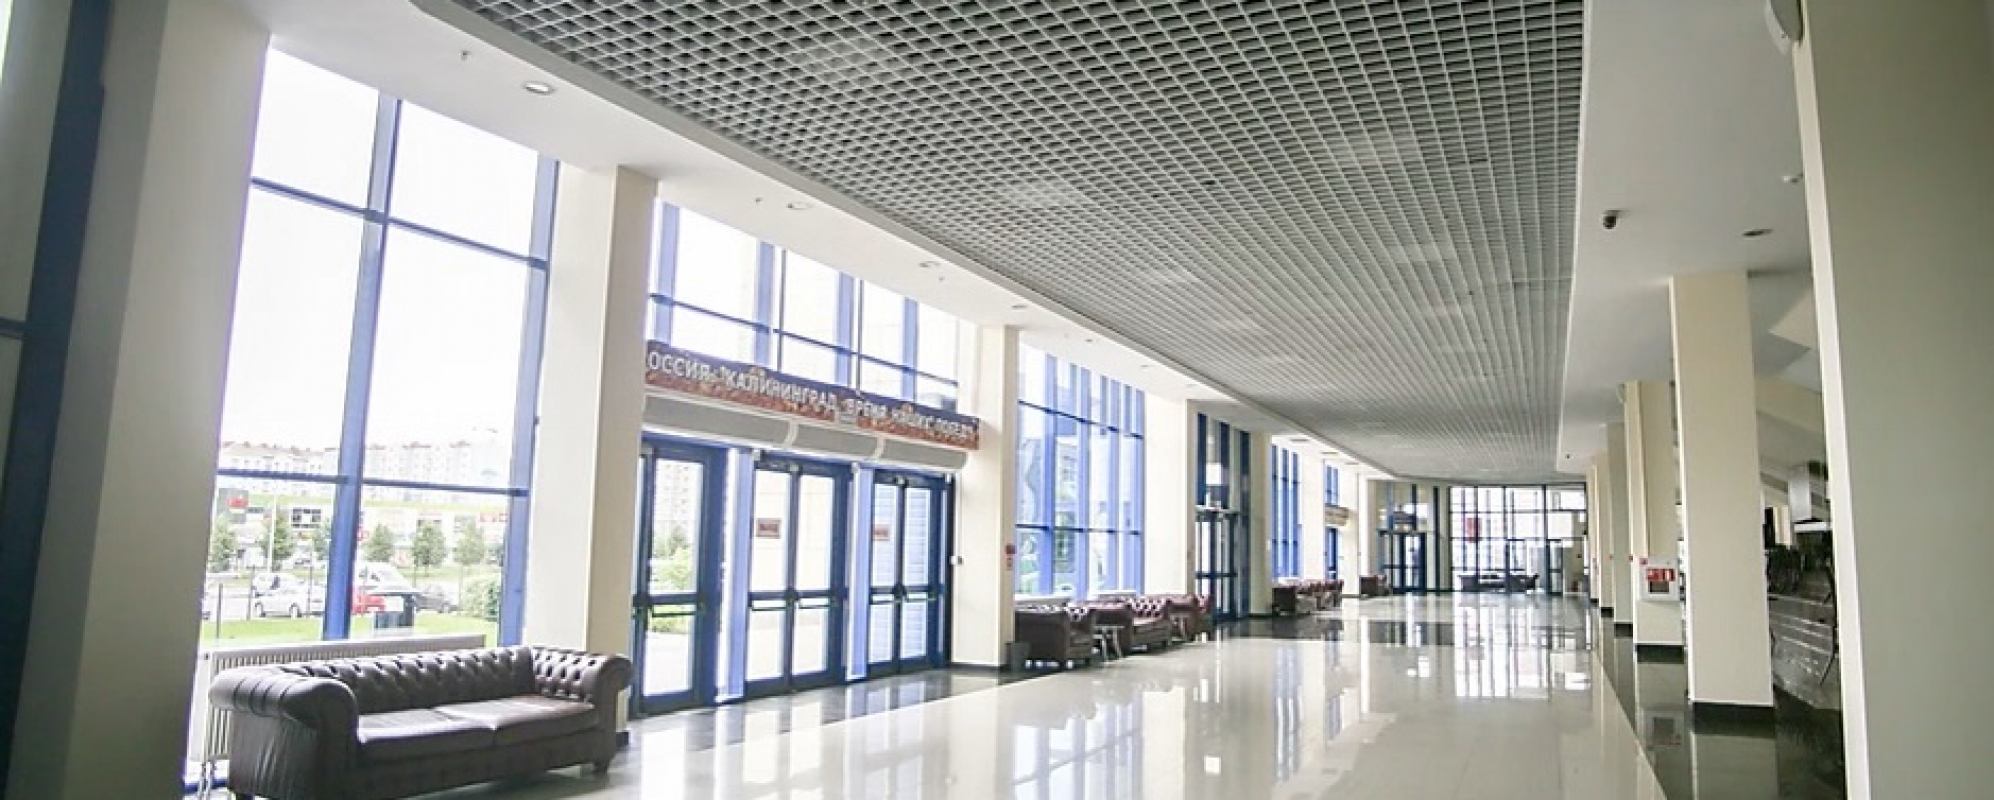 Фотографии конференц-зала Холл главной арены Дворца спорта Янтарный 1 этаж